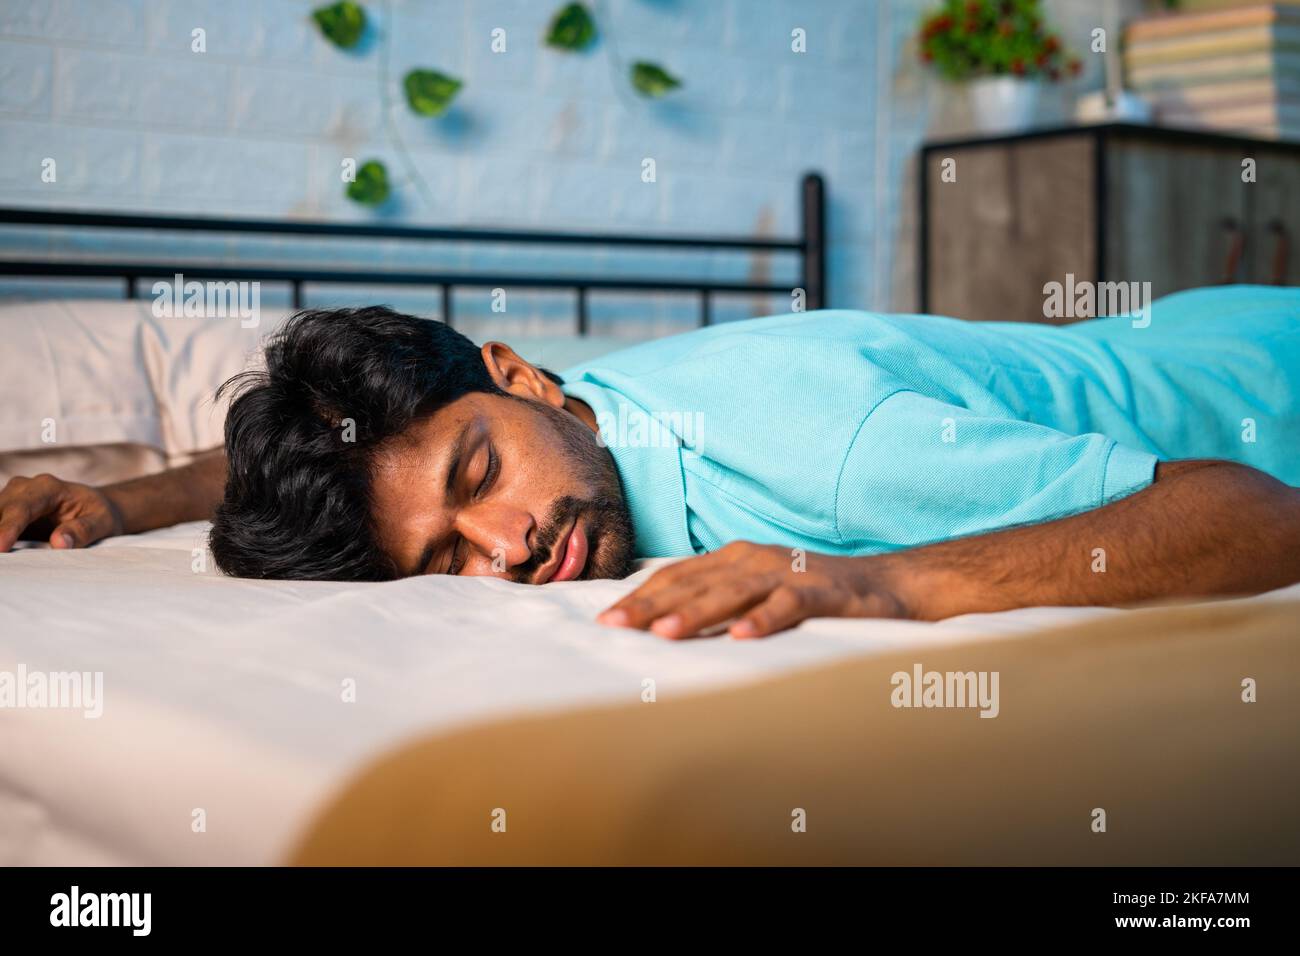 Abgestufte erschöpfte junge Mann im Schlafzimmer auf das Bett gefallen - Konzept der Müdigkeit, überarbeitet und Schlaflosigkeit Stockfoto